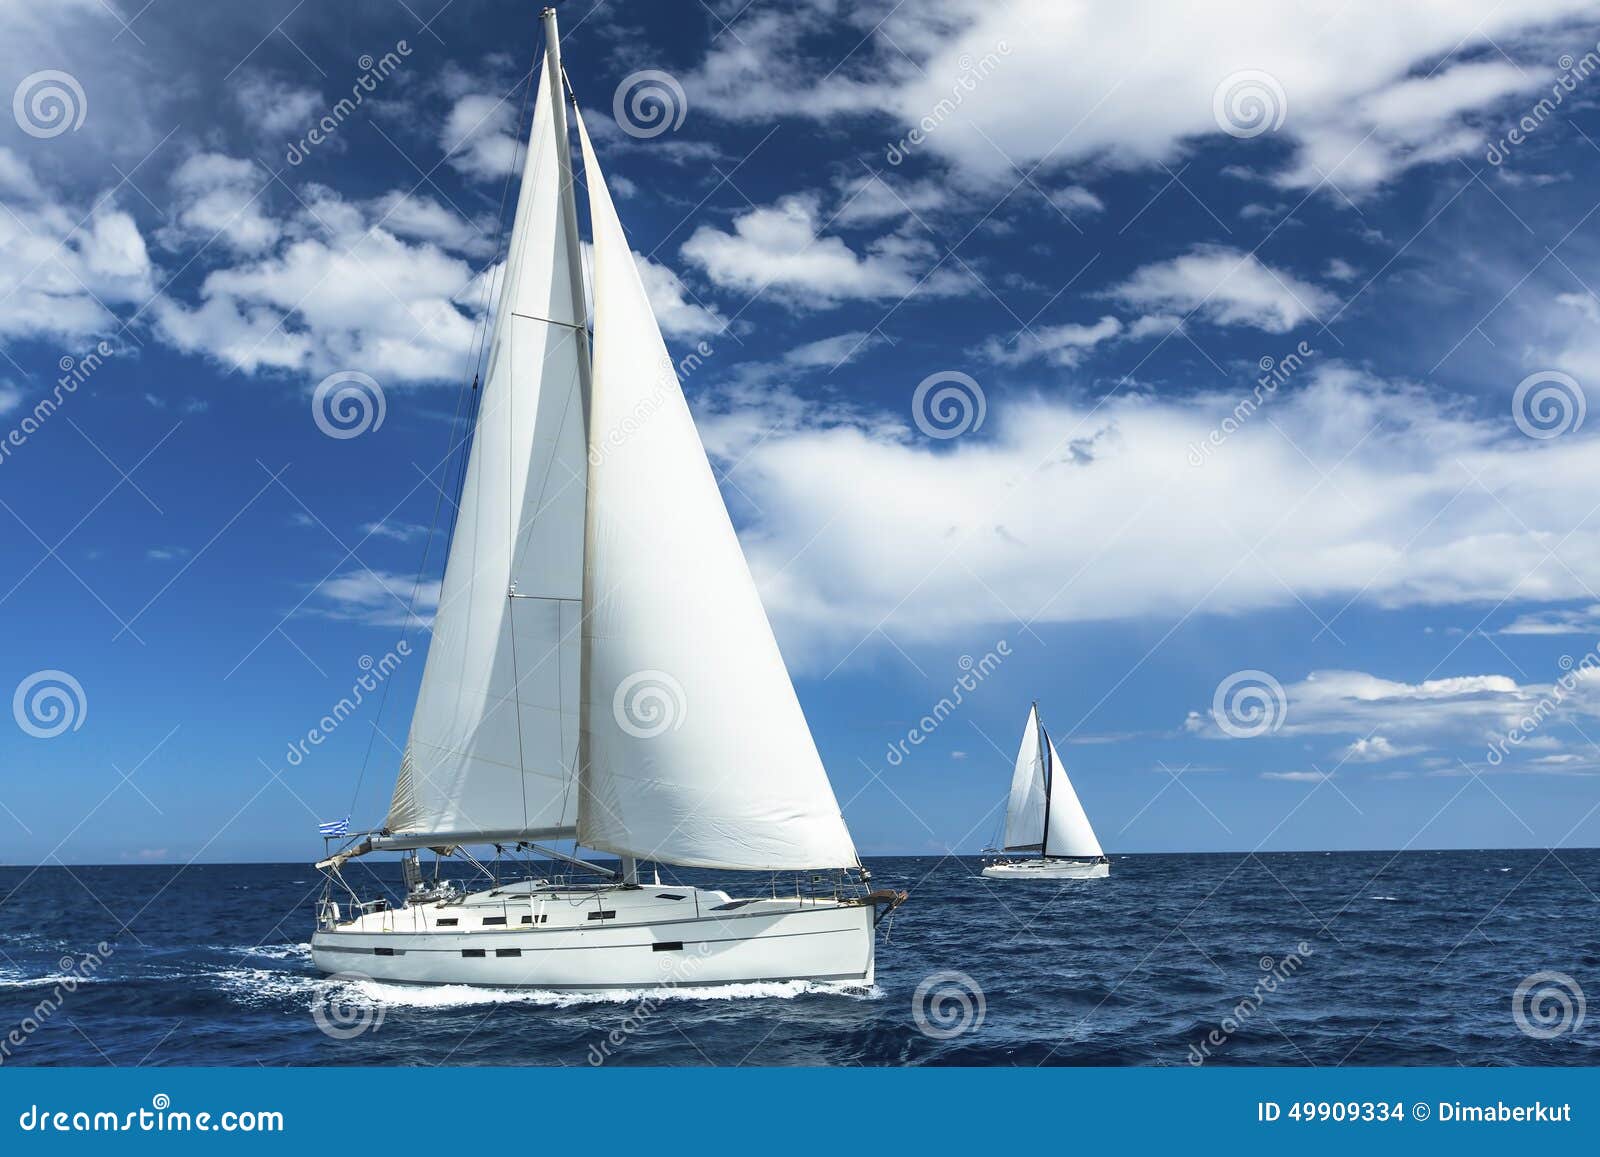 sailboats participate in sailing regatta. sailing. yachting.